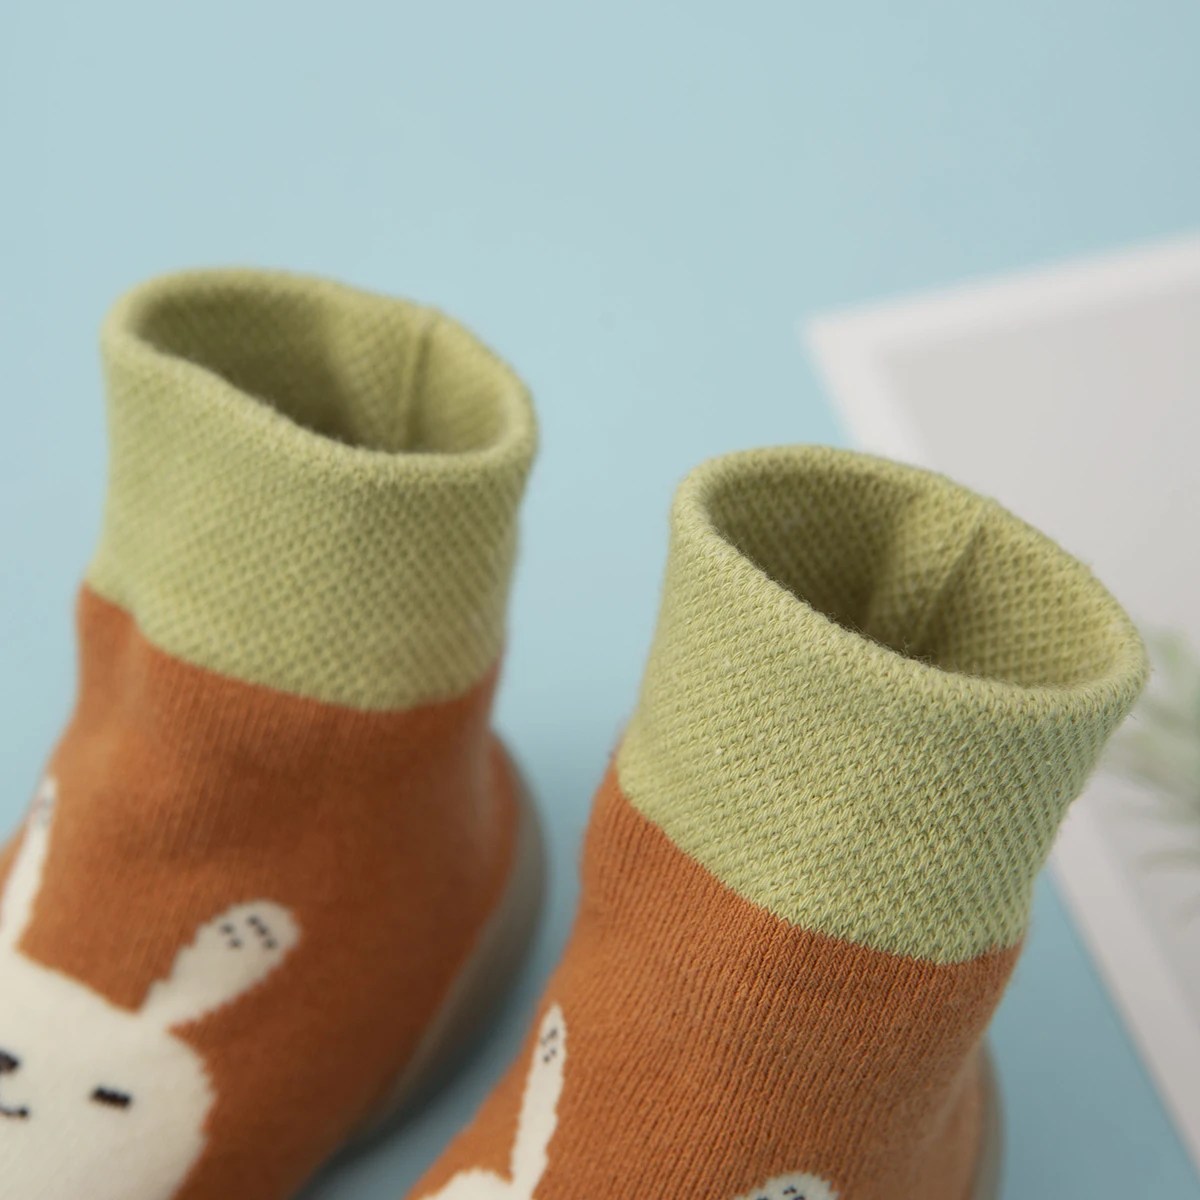 Обувь для малышей нескользящие носки-тапочки для малышей обувь для малышей на мягкой резиновой подошве Носки для малышей с героями мультфильмов детские ботиночки